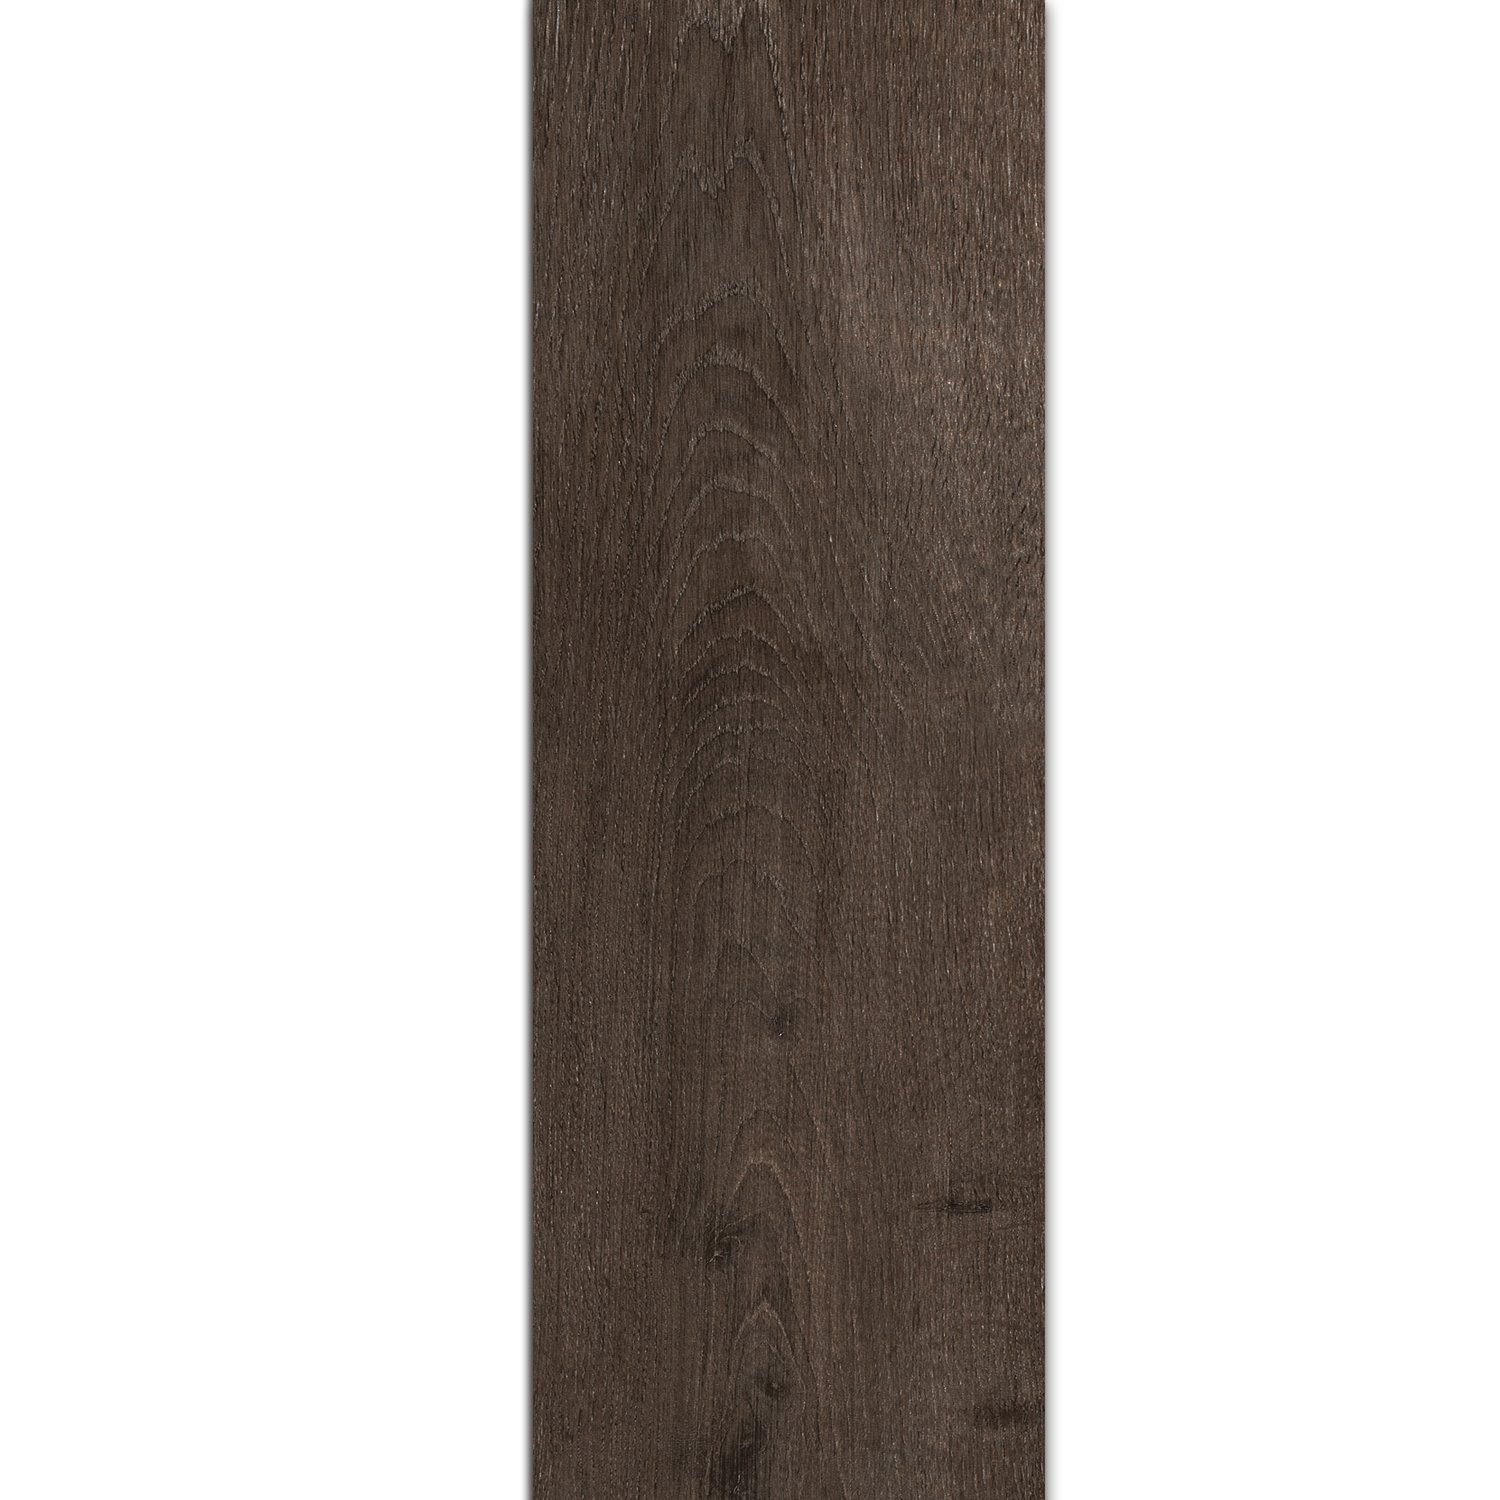 Bodenfliese Holz Optik Riverside Wenge 20x120cm